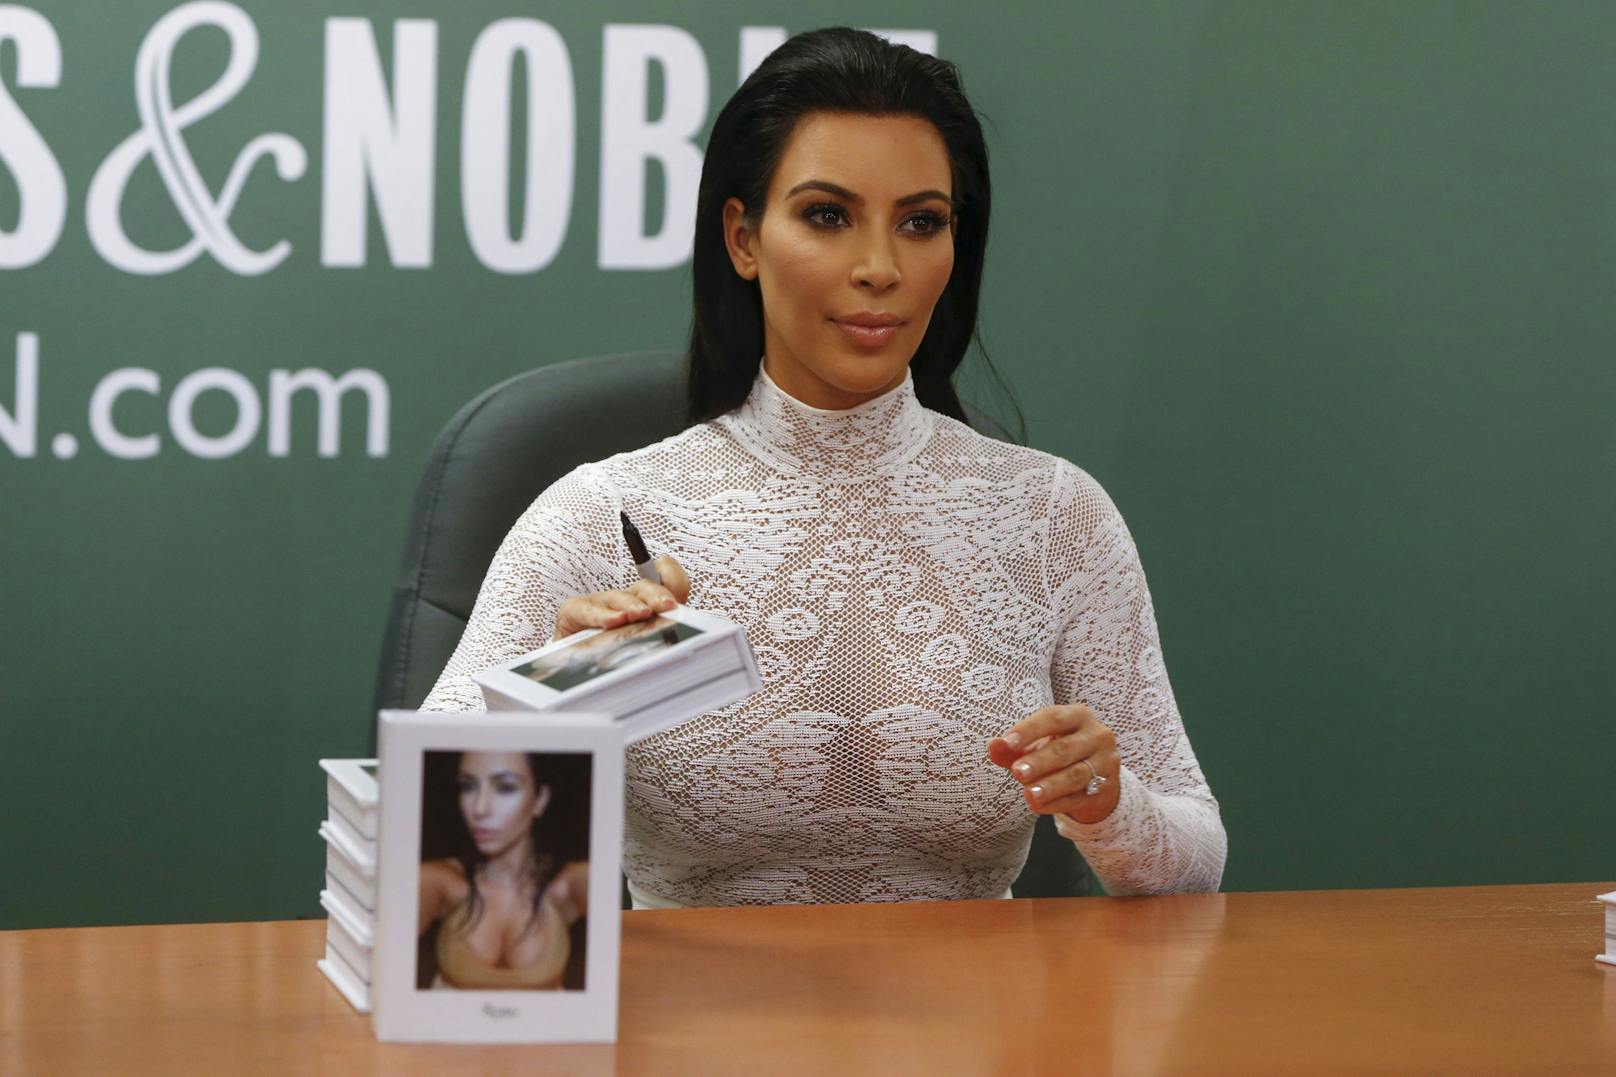 2015 veröffentlichte Kim Kardashian ihren Bildband "Selfish". Es enthält eine umfangreiche Sammlung von Selfies und persönlichen Fotos, die Kim im Laufe der Jahre gemacht hat. Die Veröffentlichung des Buches löste einige Kontroversen aus, da einige Kritiker argumentierten, dass es zur Selbstverherrlichung beitrage und oberflächlich sei, während ihre Fans es als kreative Darstellung von Kims öffentlichem und privatem Leben lobten.